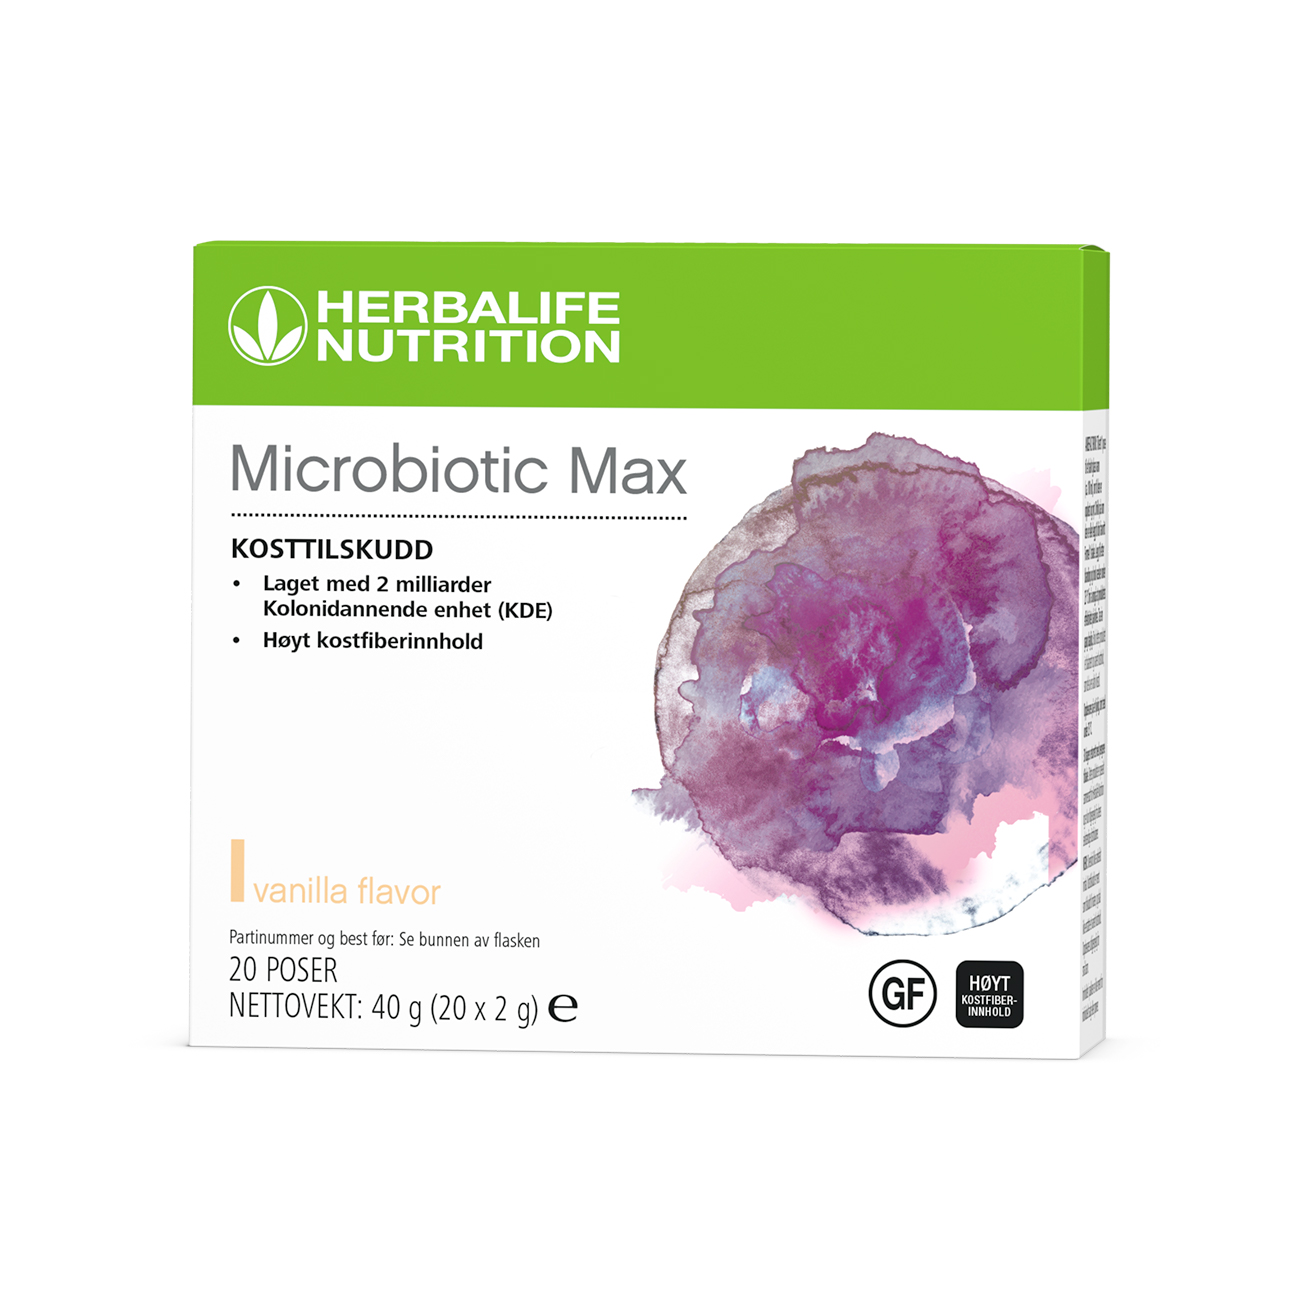 Microbiotic Max, kosttilskudd i pulverform formulert med en kombinasjon av probiotika og prebiotisk fiber.